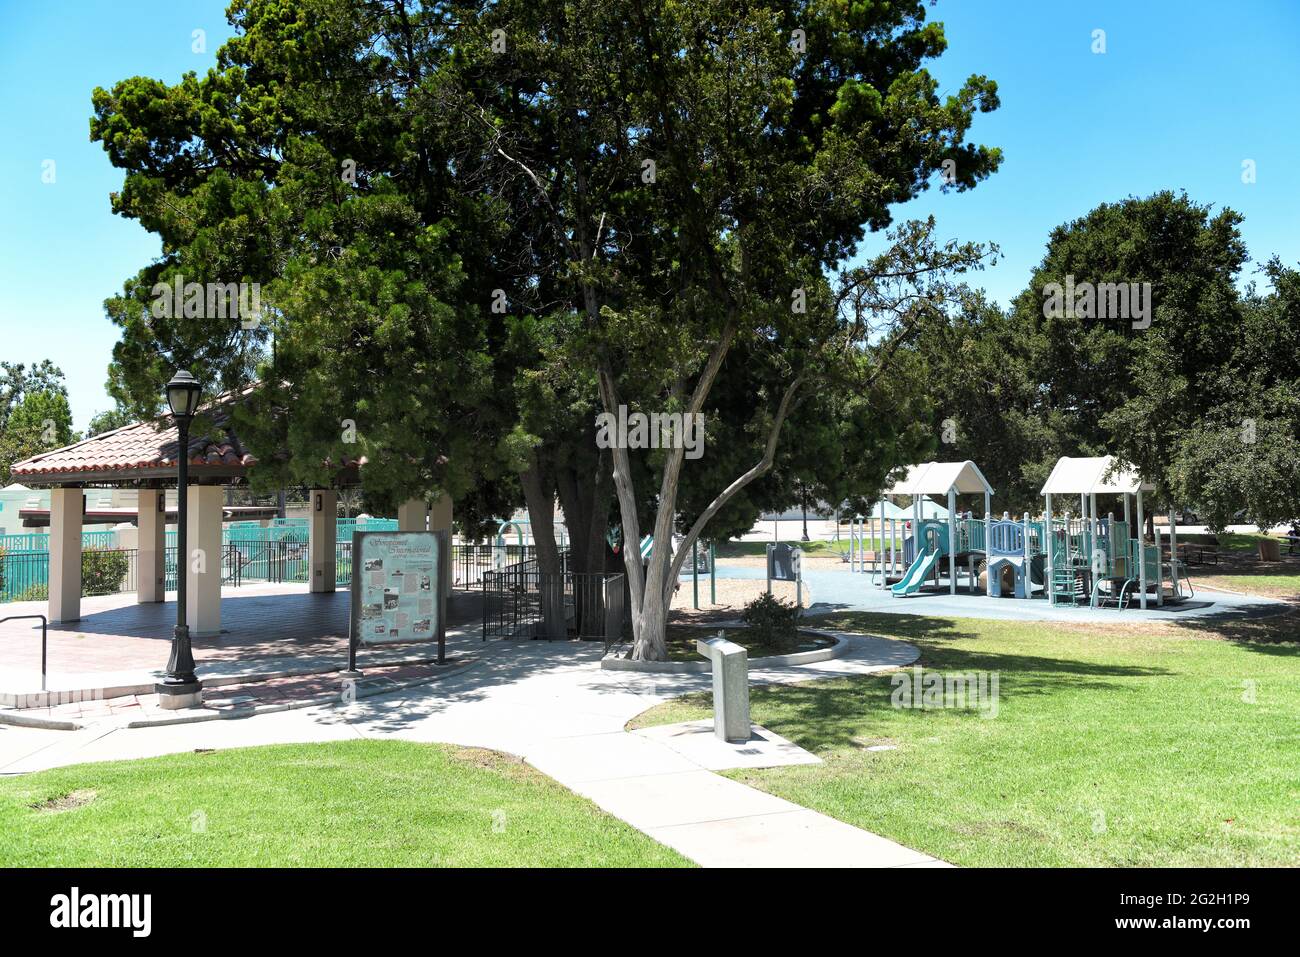 BREA, CALIFORNIA - 9 GIU 2021: La Bandstand Ralph Barns nel City Hall Park, con il Plunge e il parco giochi sullo sfondo. Foto Stock